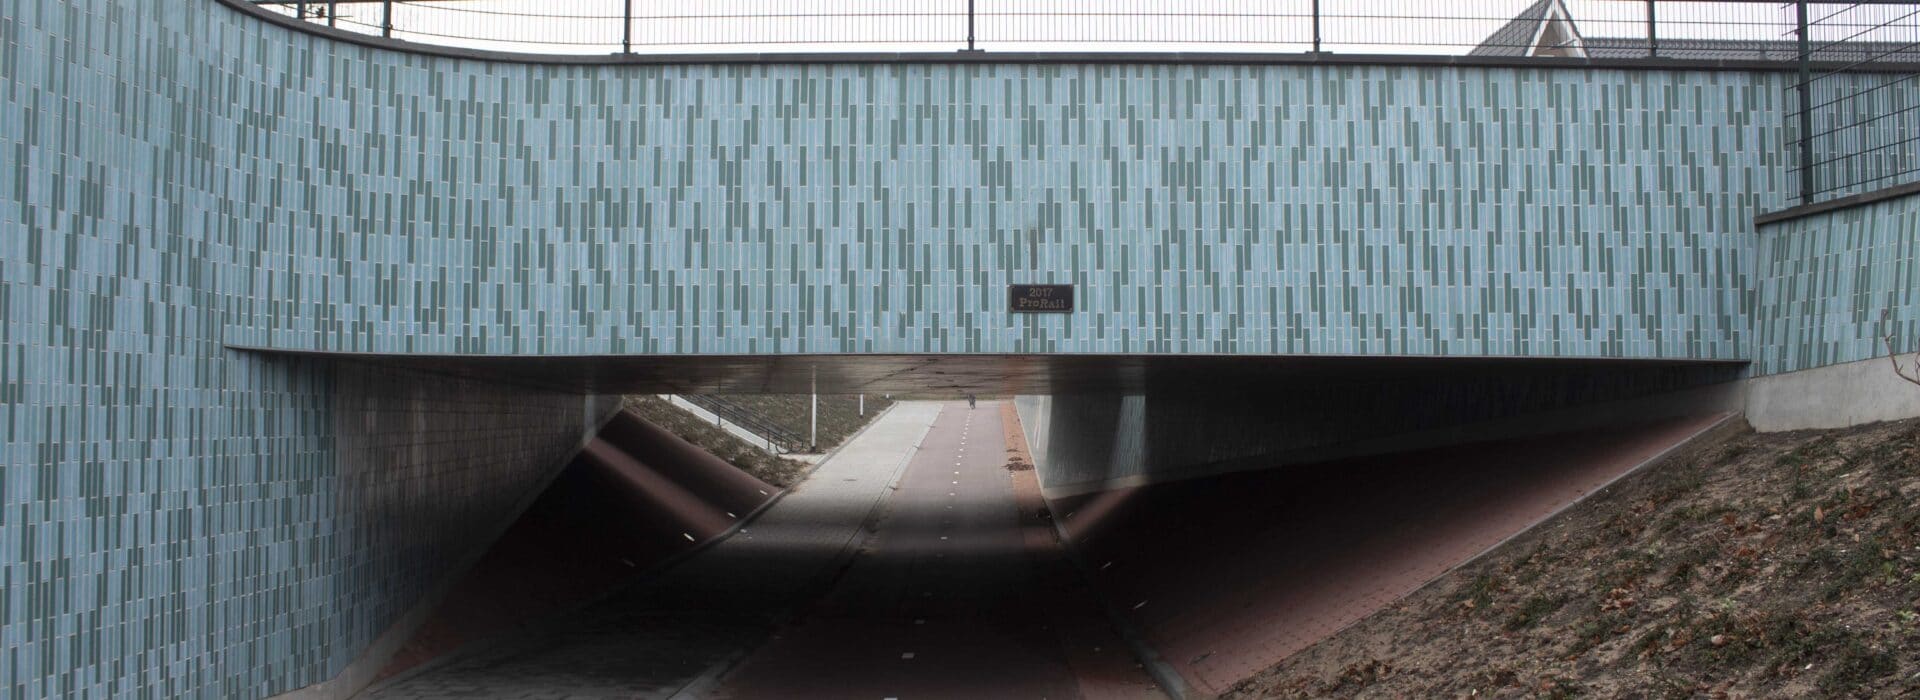 Bosch Beton - Veiliger en sneller onder het spoor door in Den Dolder